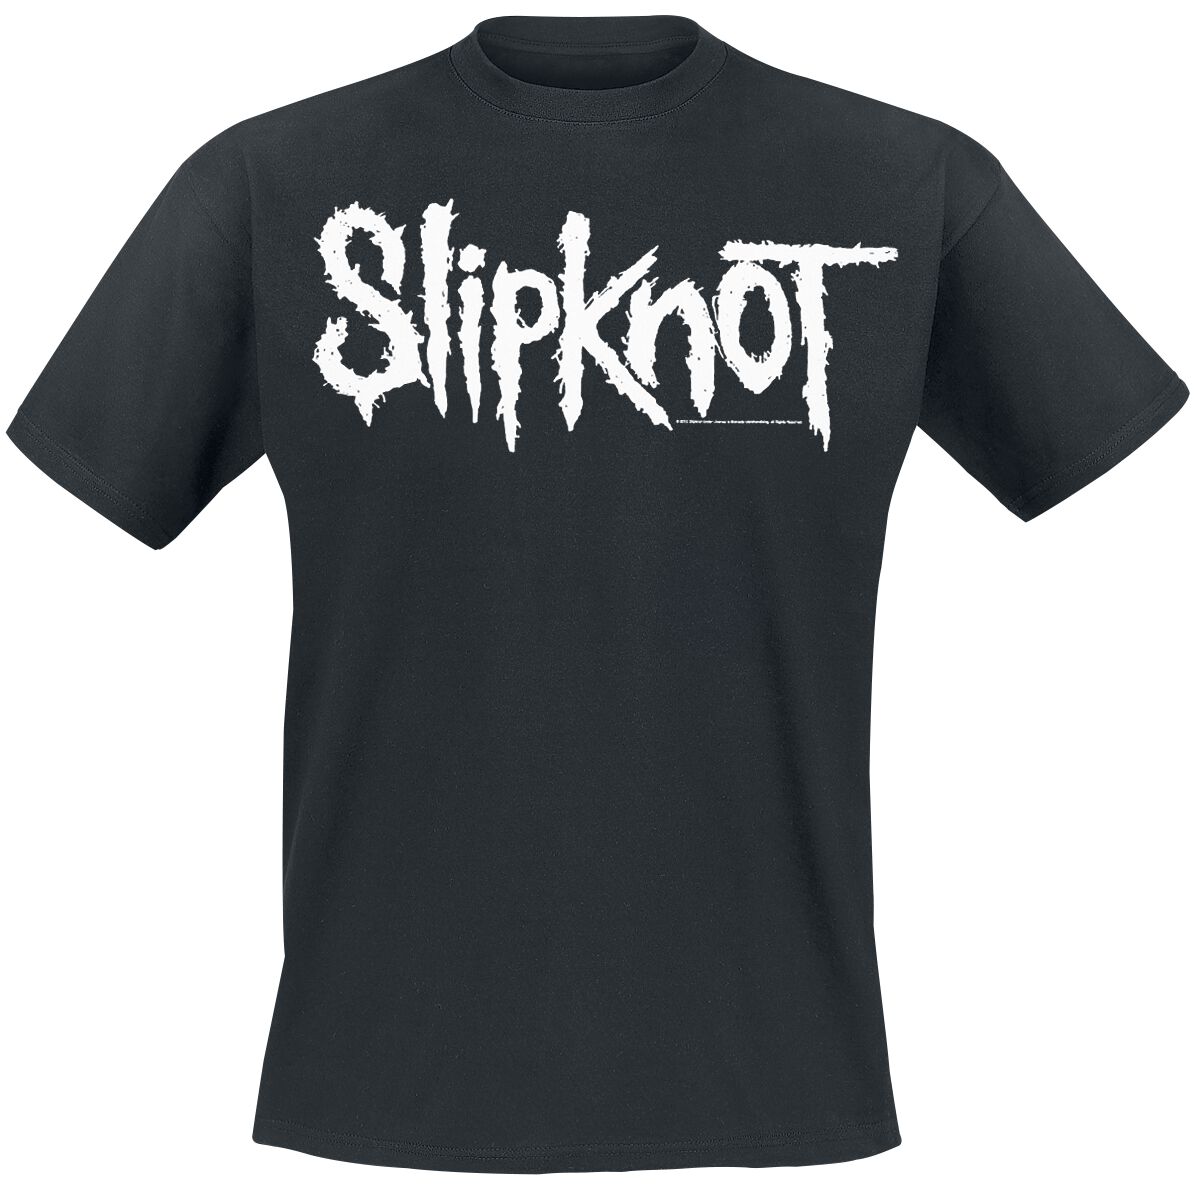 Slipknot T-Shirt - White Logo - S bis 5XL - für Männer - Größe M - schwarz  - EMP exklusives Merchandise!